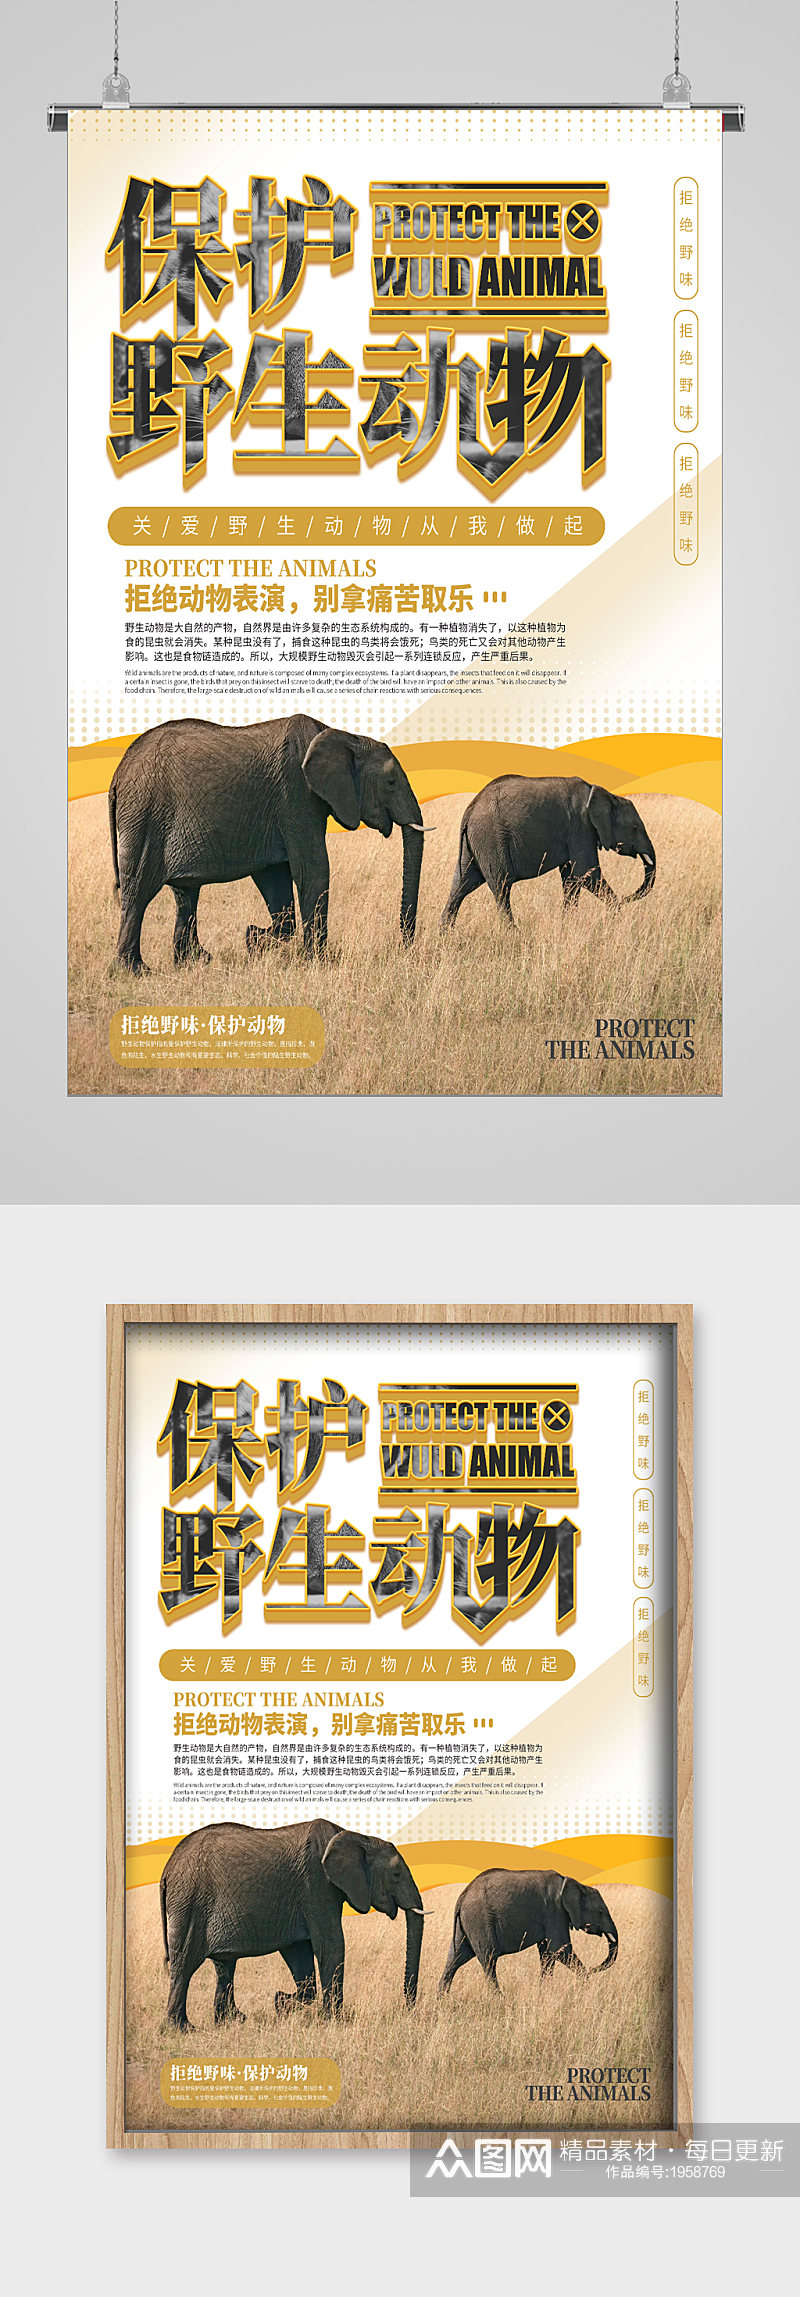 世界动物日大象的家海报素材